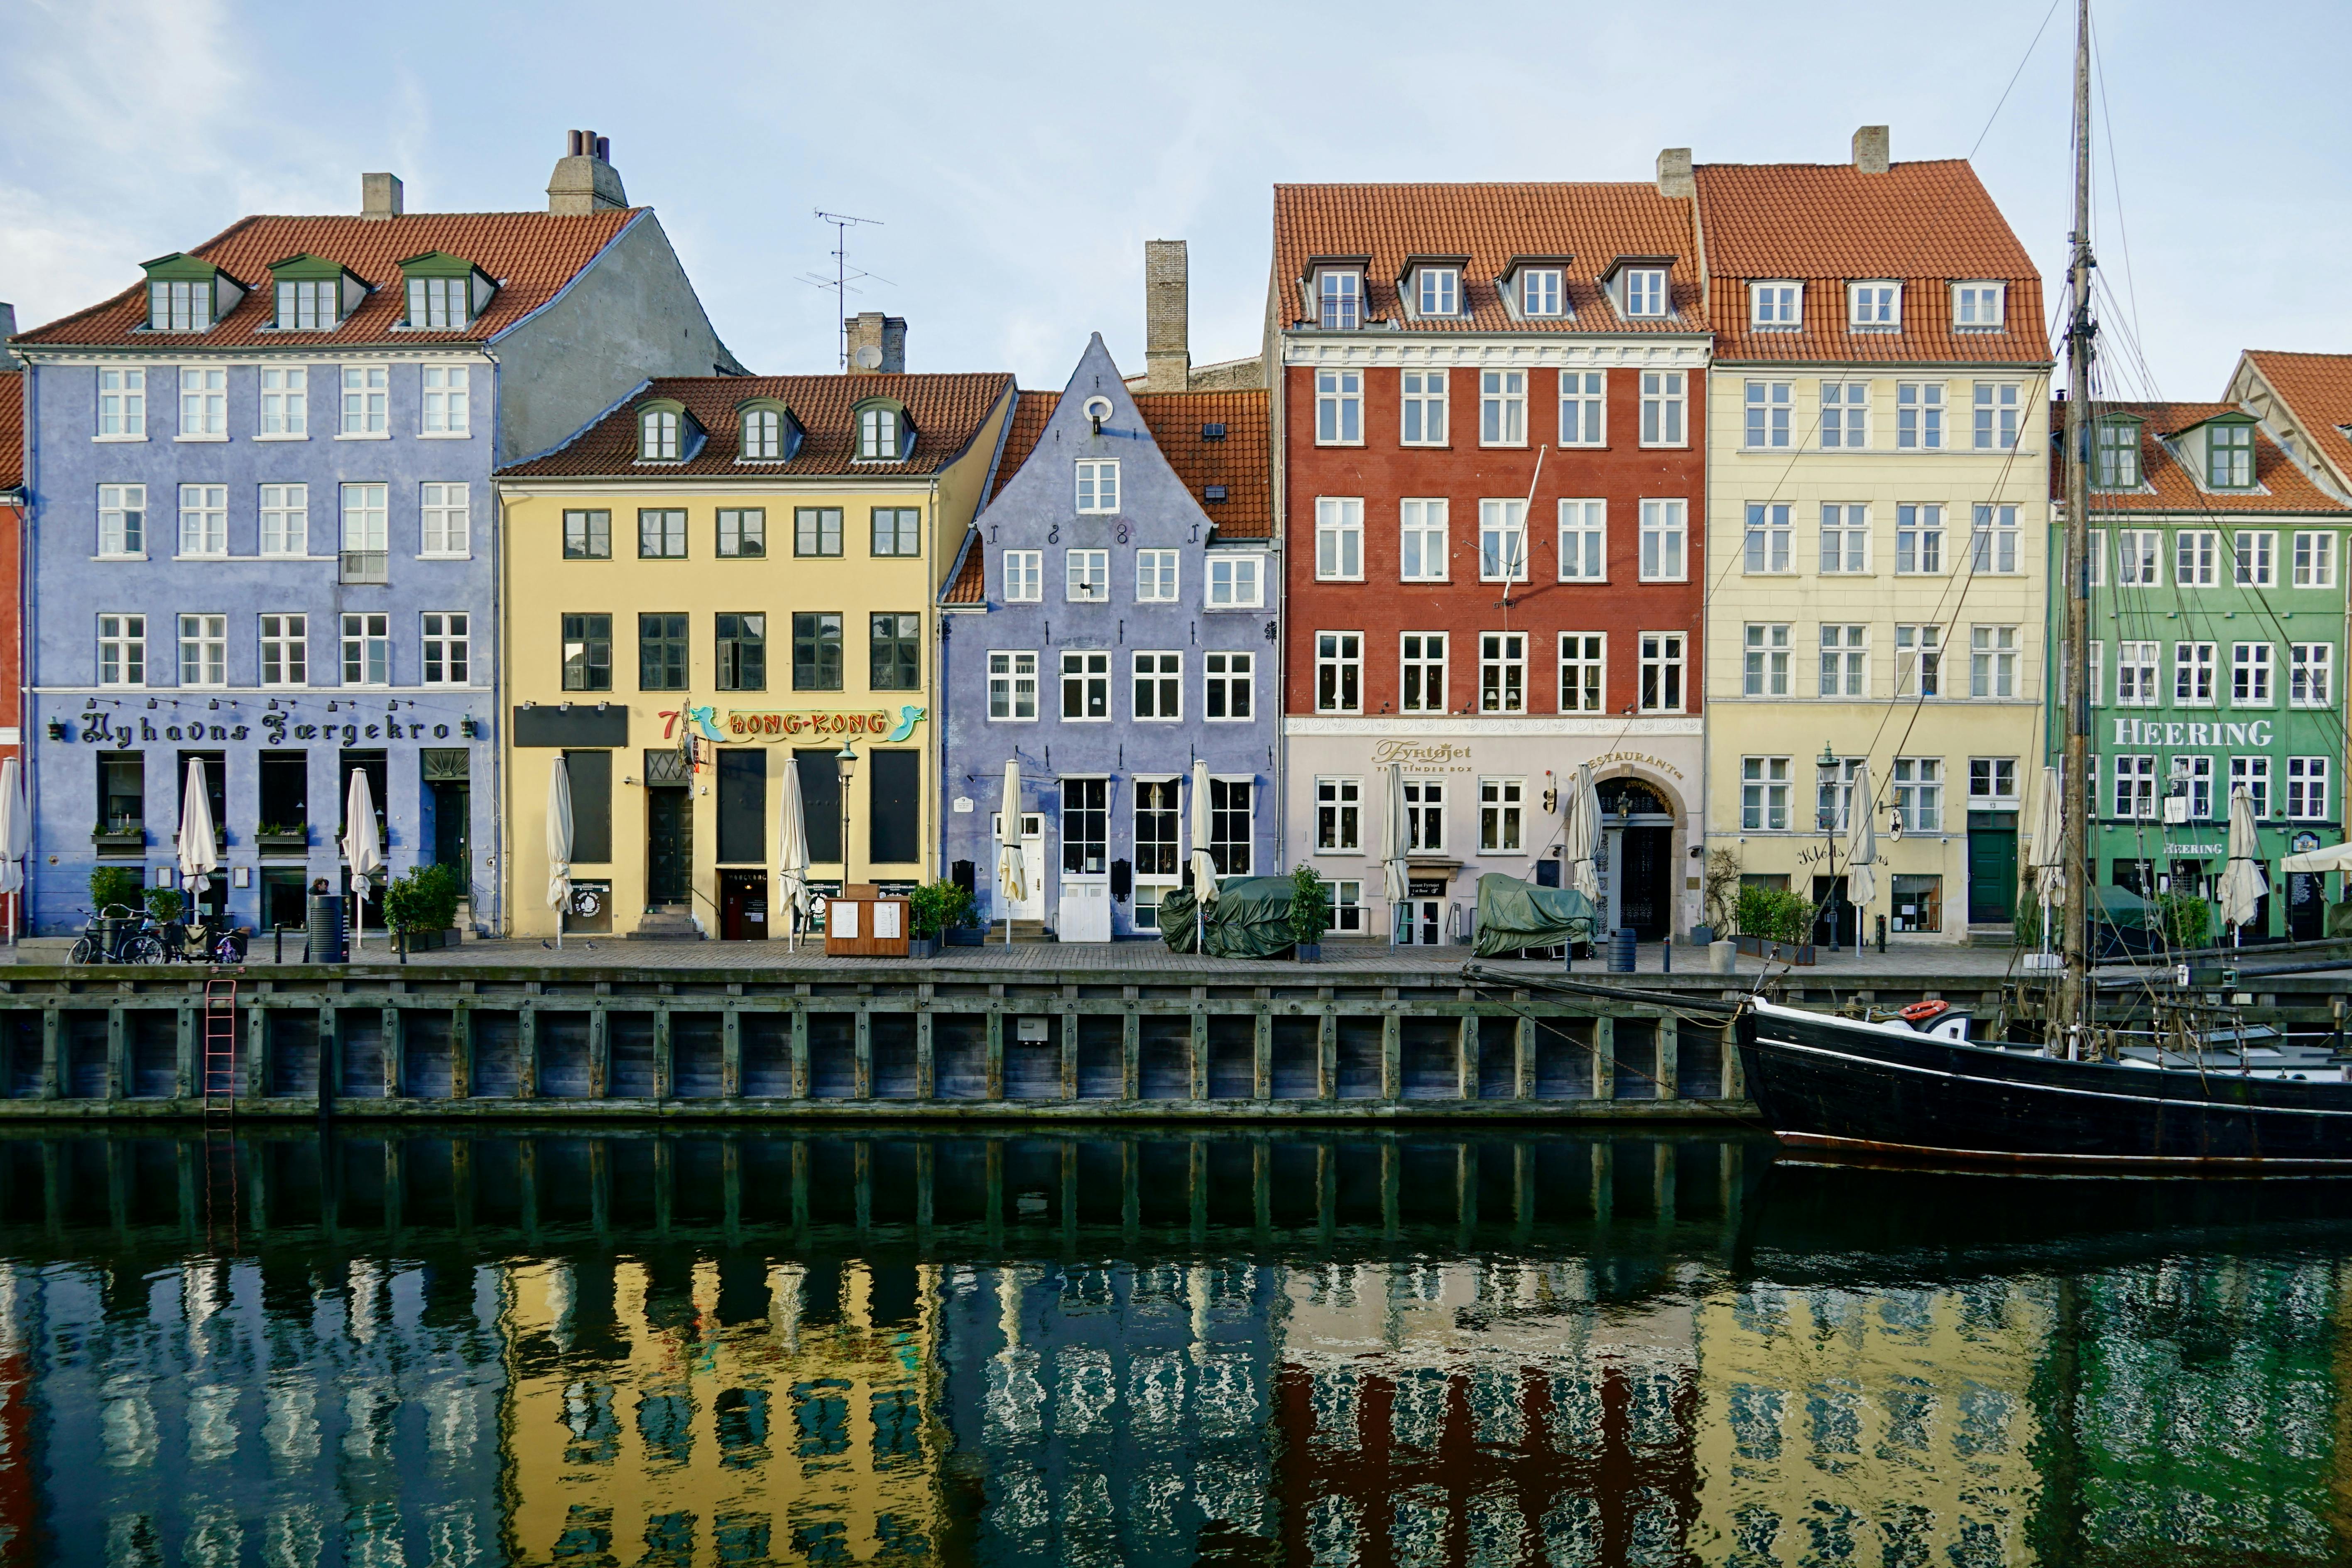 Napad w tajemniczej przygodzie w Nyhavn